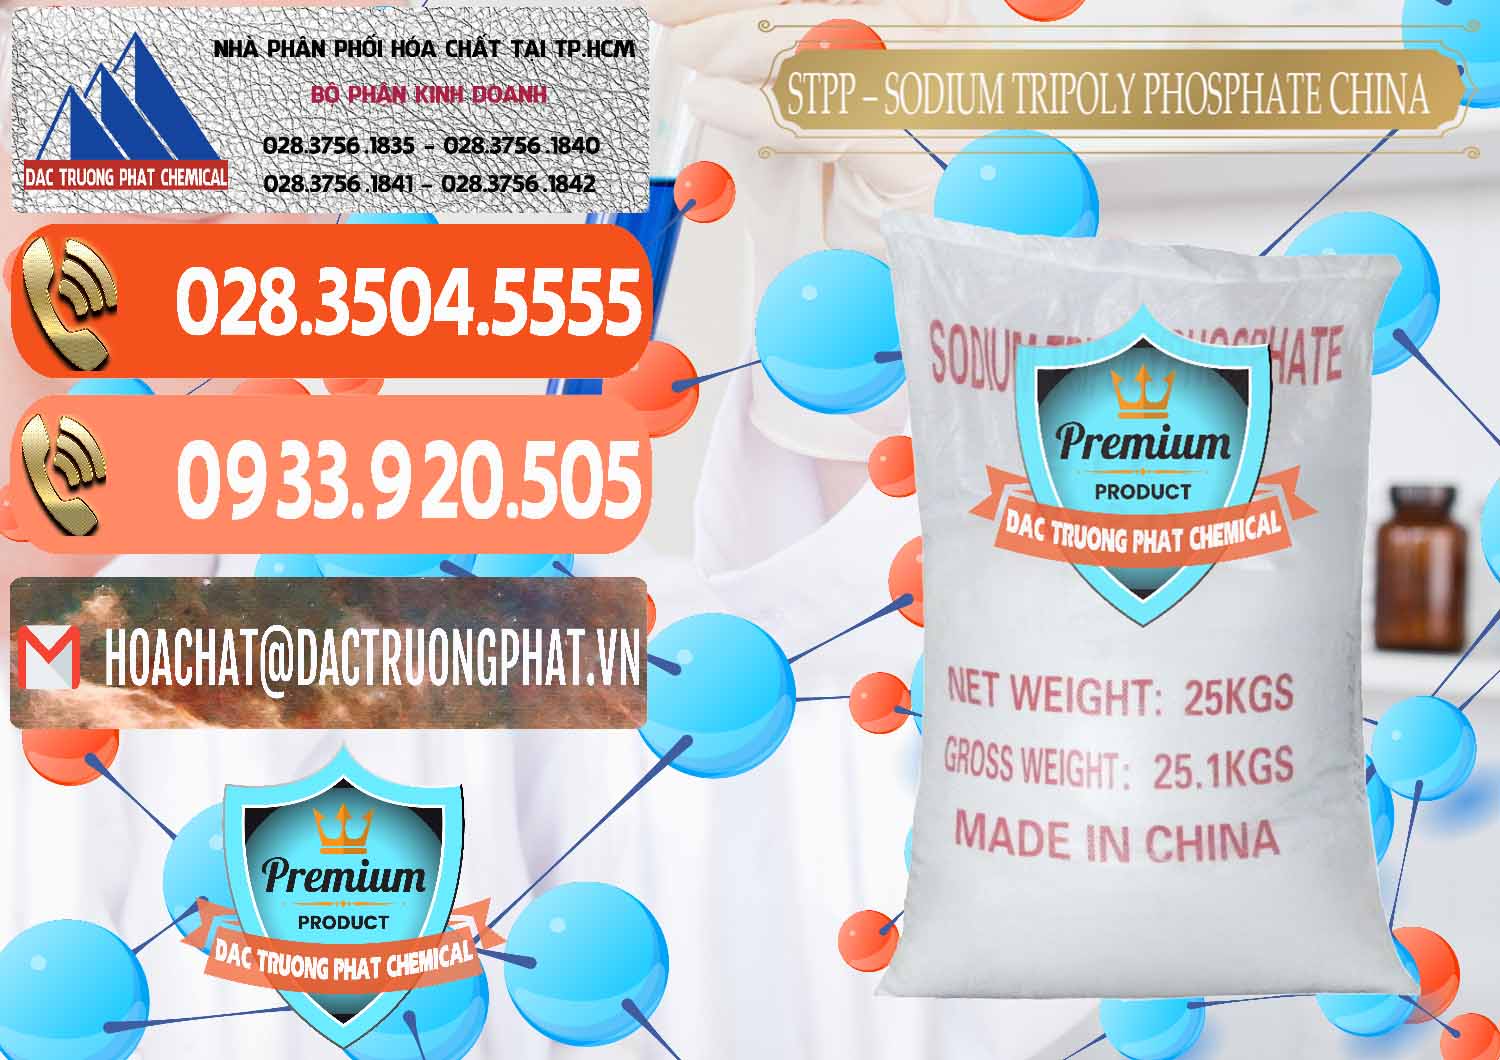 Chuyên cung ứng và bán Sodium Tripoly Phosphate - STPP 96% Chữ Đỏ Trung Quốc China - 0155 - Cty nhập khẩu - phân phối hóa chất tại TP.HCM - hoachatmientay.com